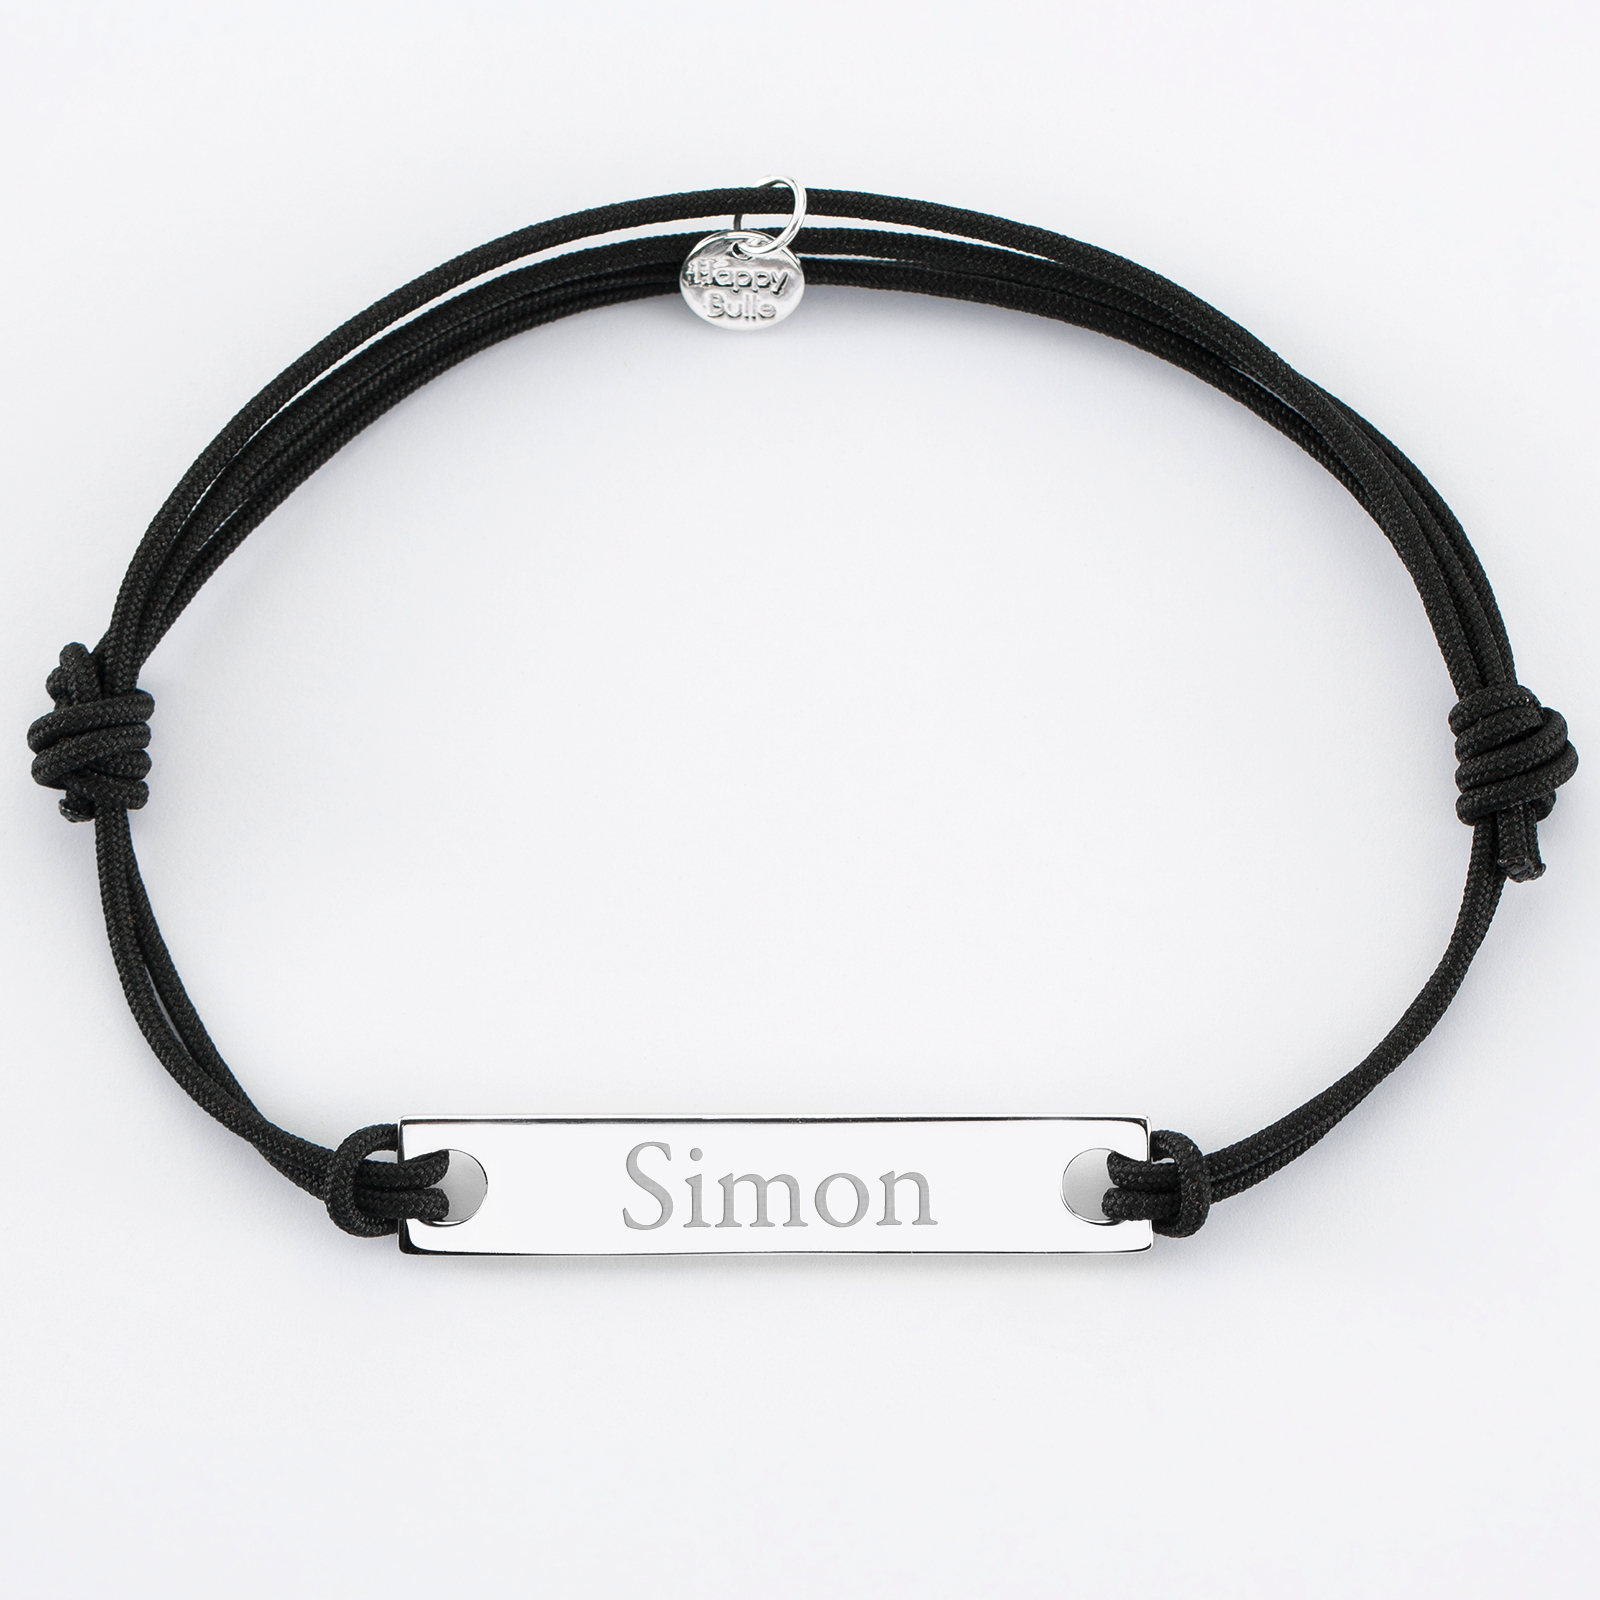 Le bracelet breloques porte-bonheur, Simons